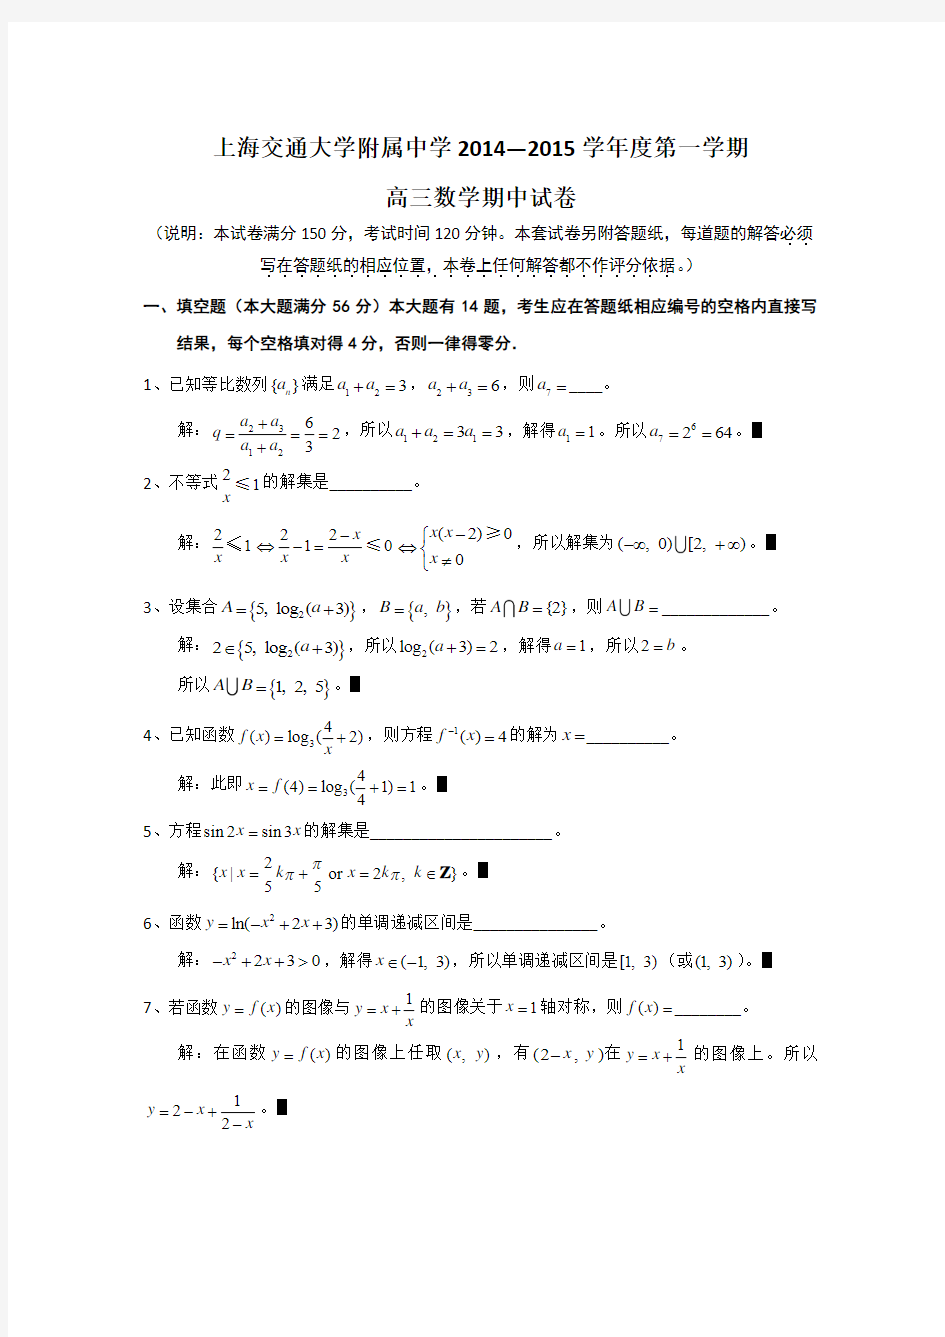 上海交通大学附属中学2015届高三上学期期中考试数学试题